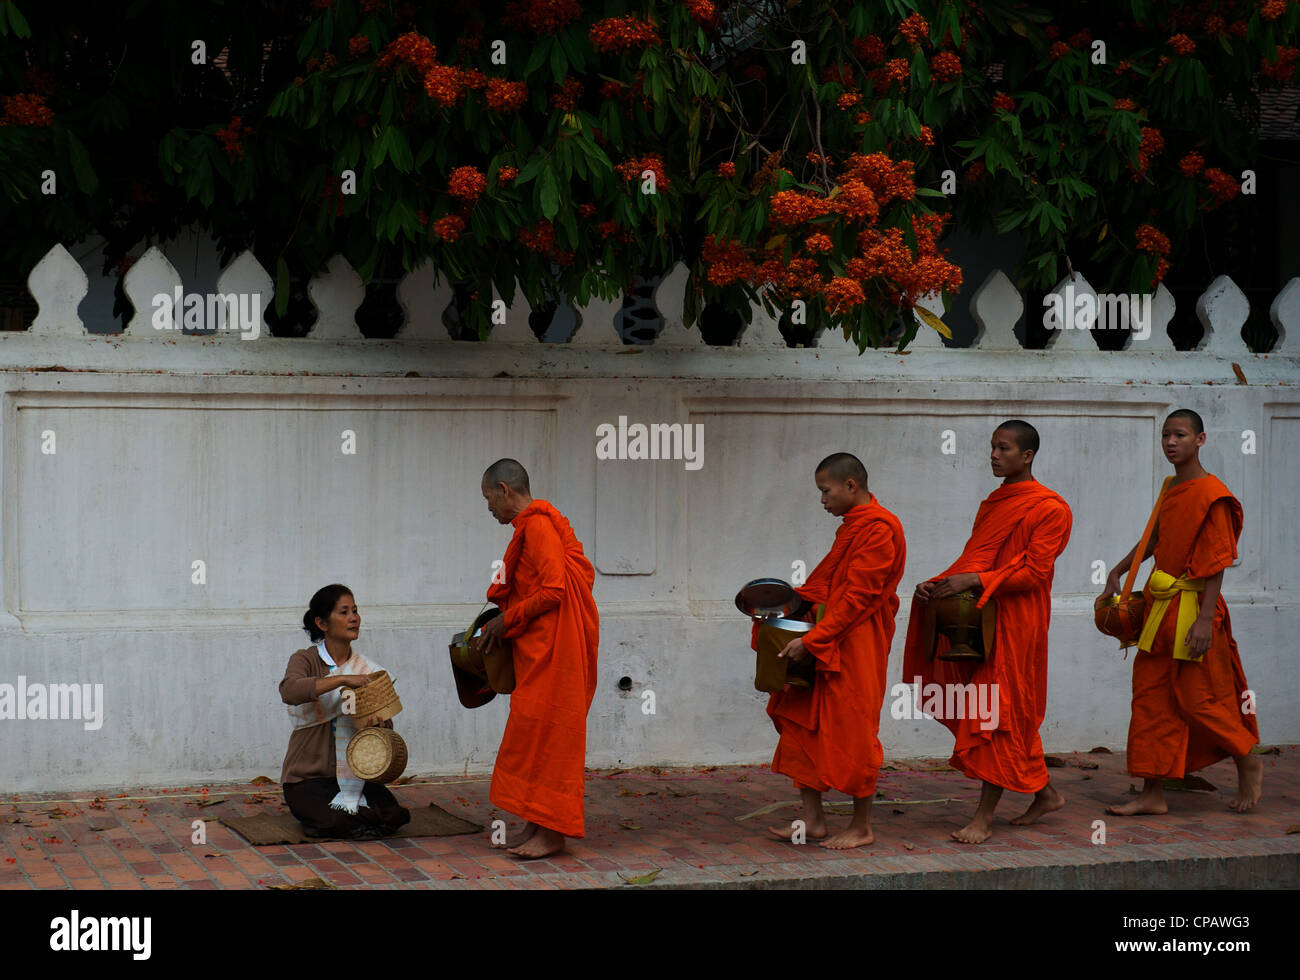 Monka collect alms every morning at dawn, Luang Prabang, Mekong River, Laos Stock Photo